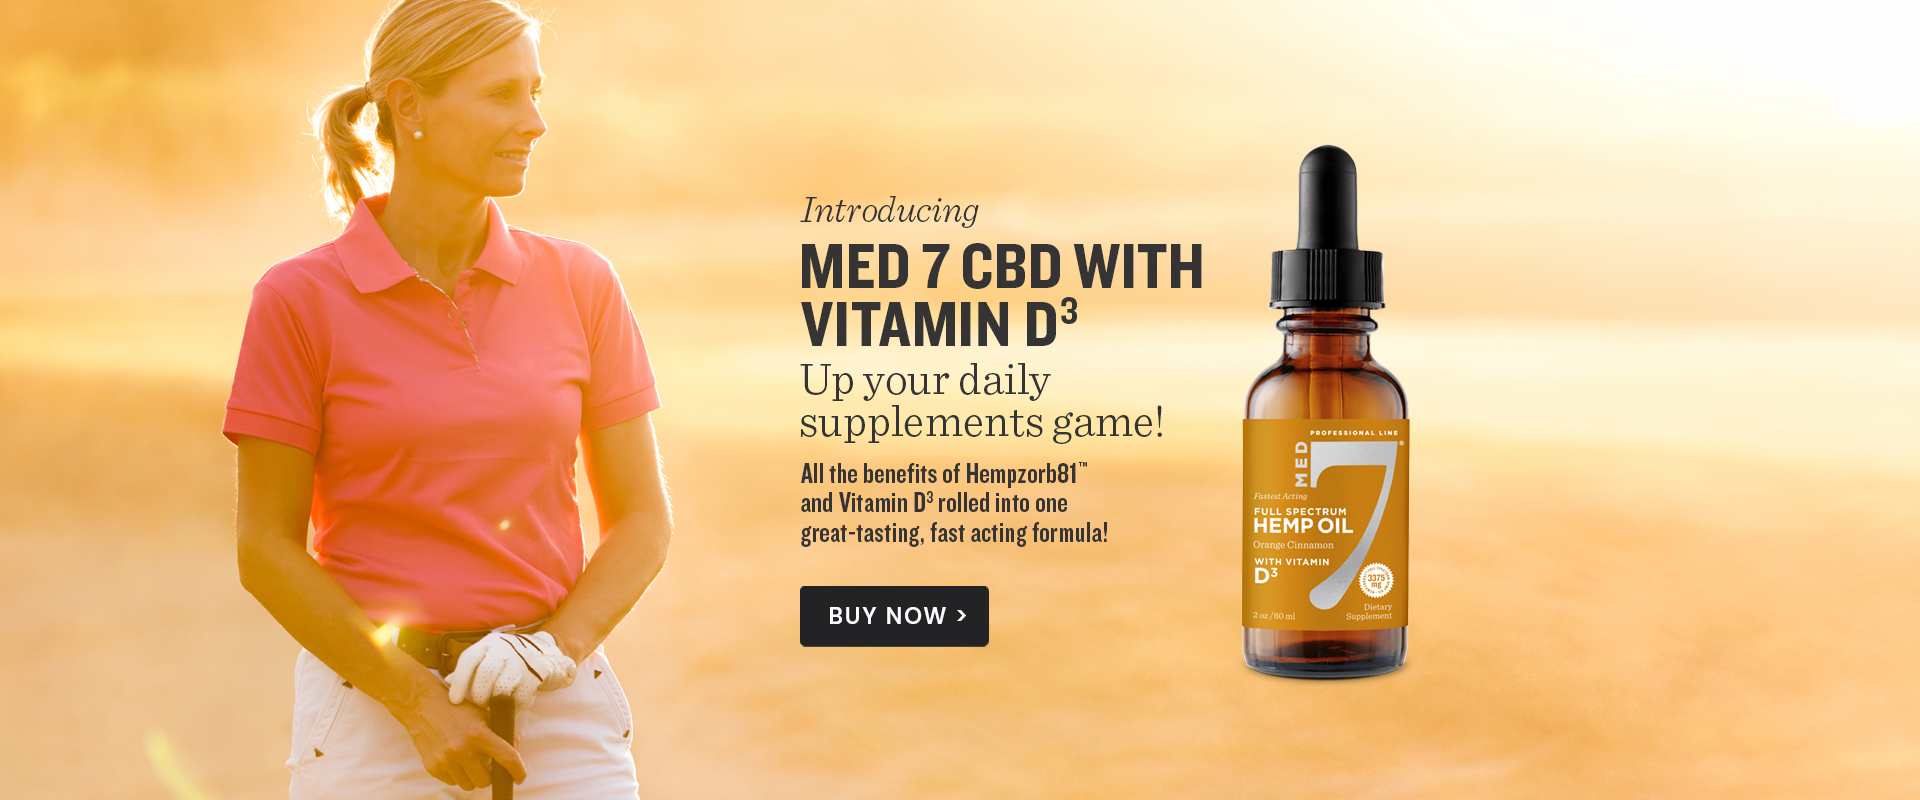 Med 7 CBD with Vitamin D3